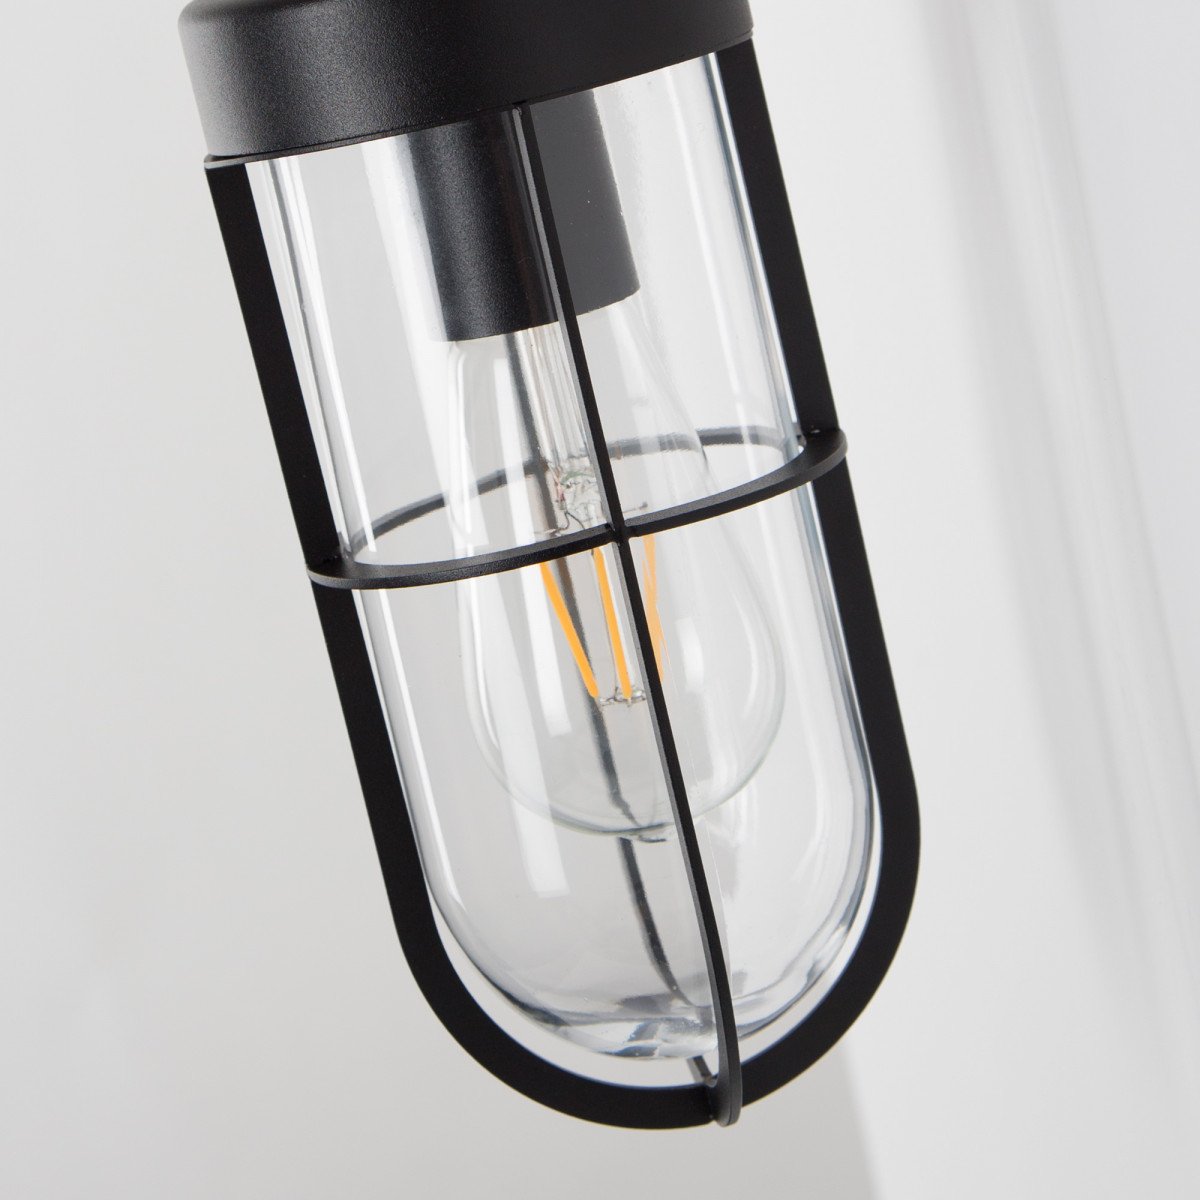 Zwarte buitenlamp voor aan de muur, type stallamp, strak moderne stijl, glazen stolp met raster, frame buis, ronde achterplaat, moderne buitenverlichting